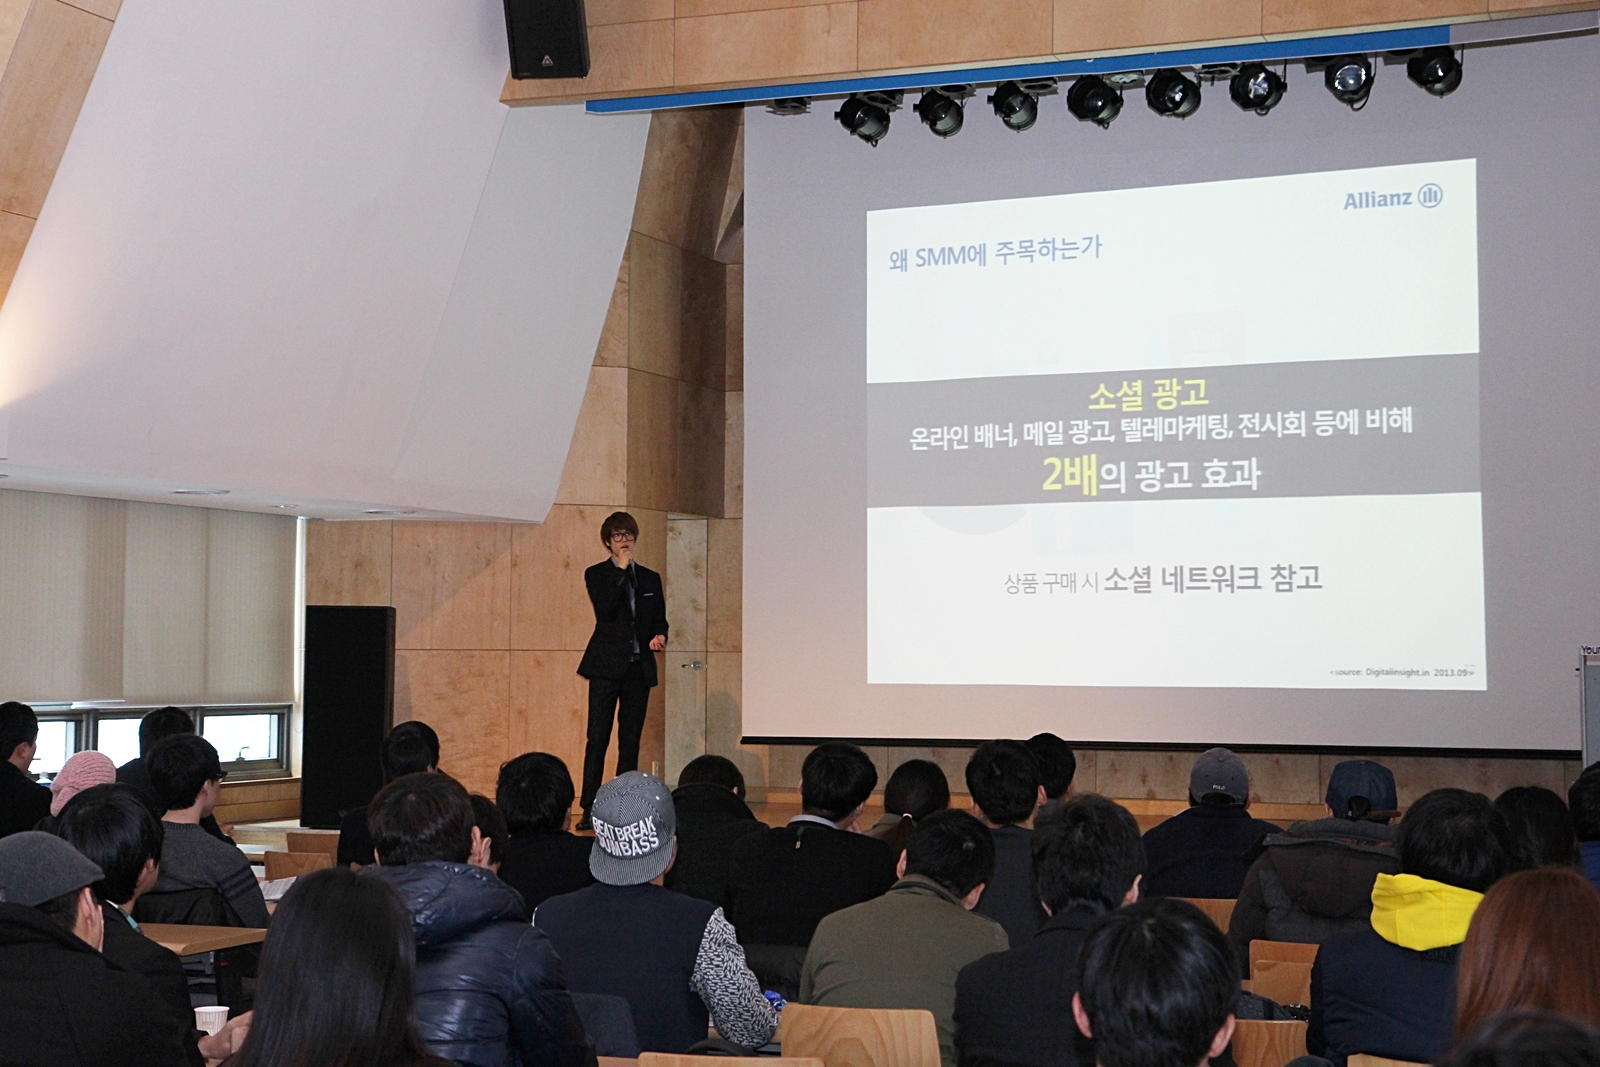 영 알리안츠, '소셜 미디어 마케팅, 틈새를 말하다' 세미나 개최 [2014-02-18] 